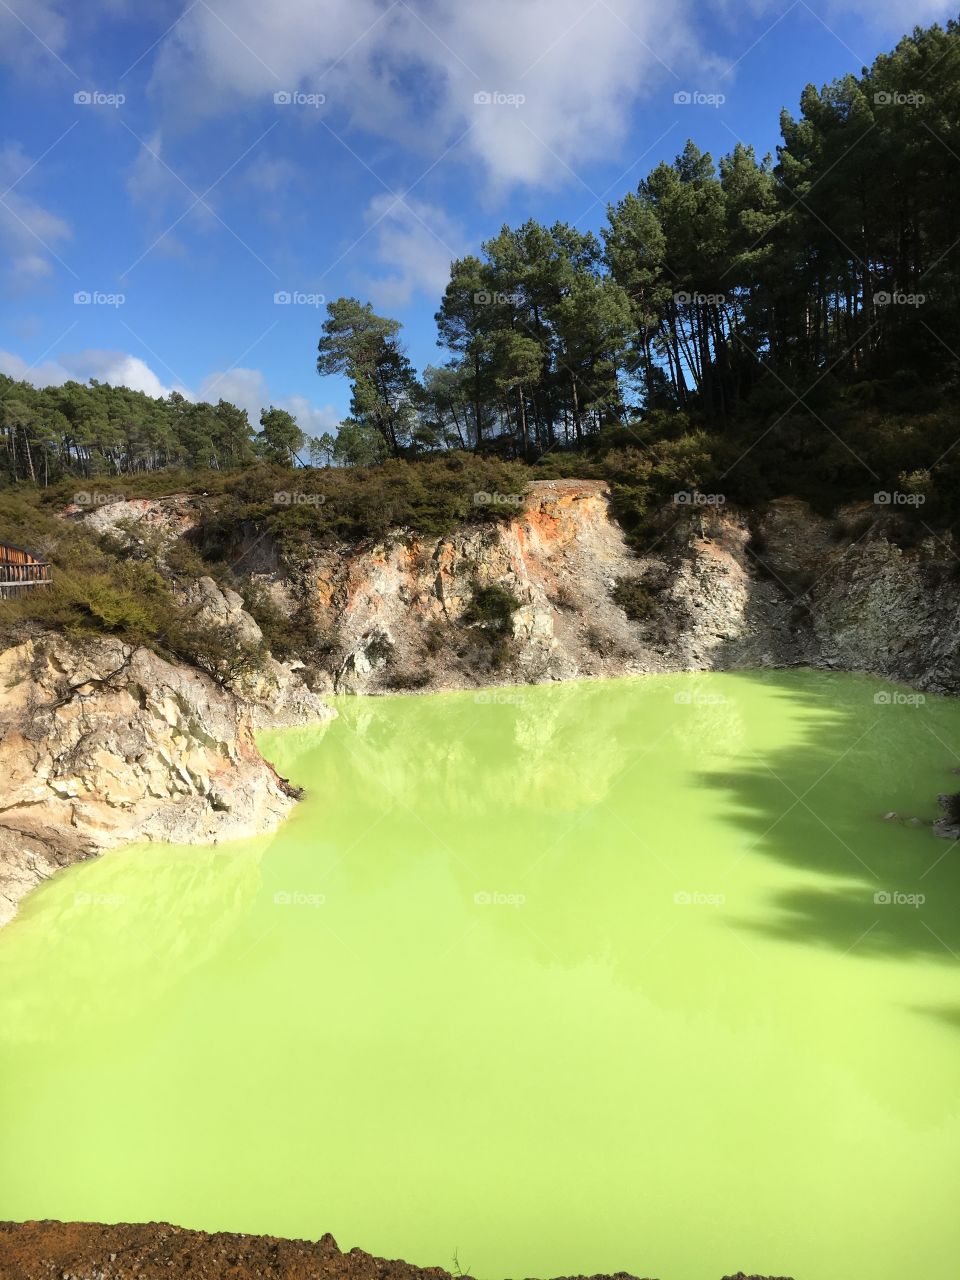 Rotorua green pool hot springs 